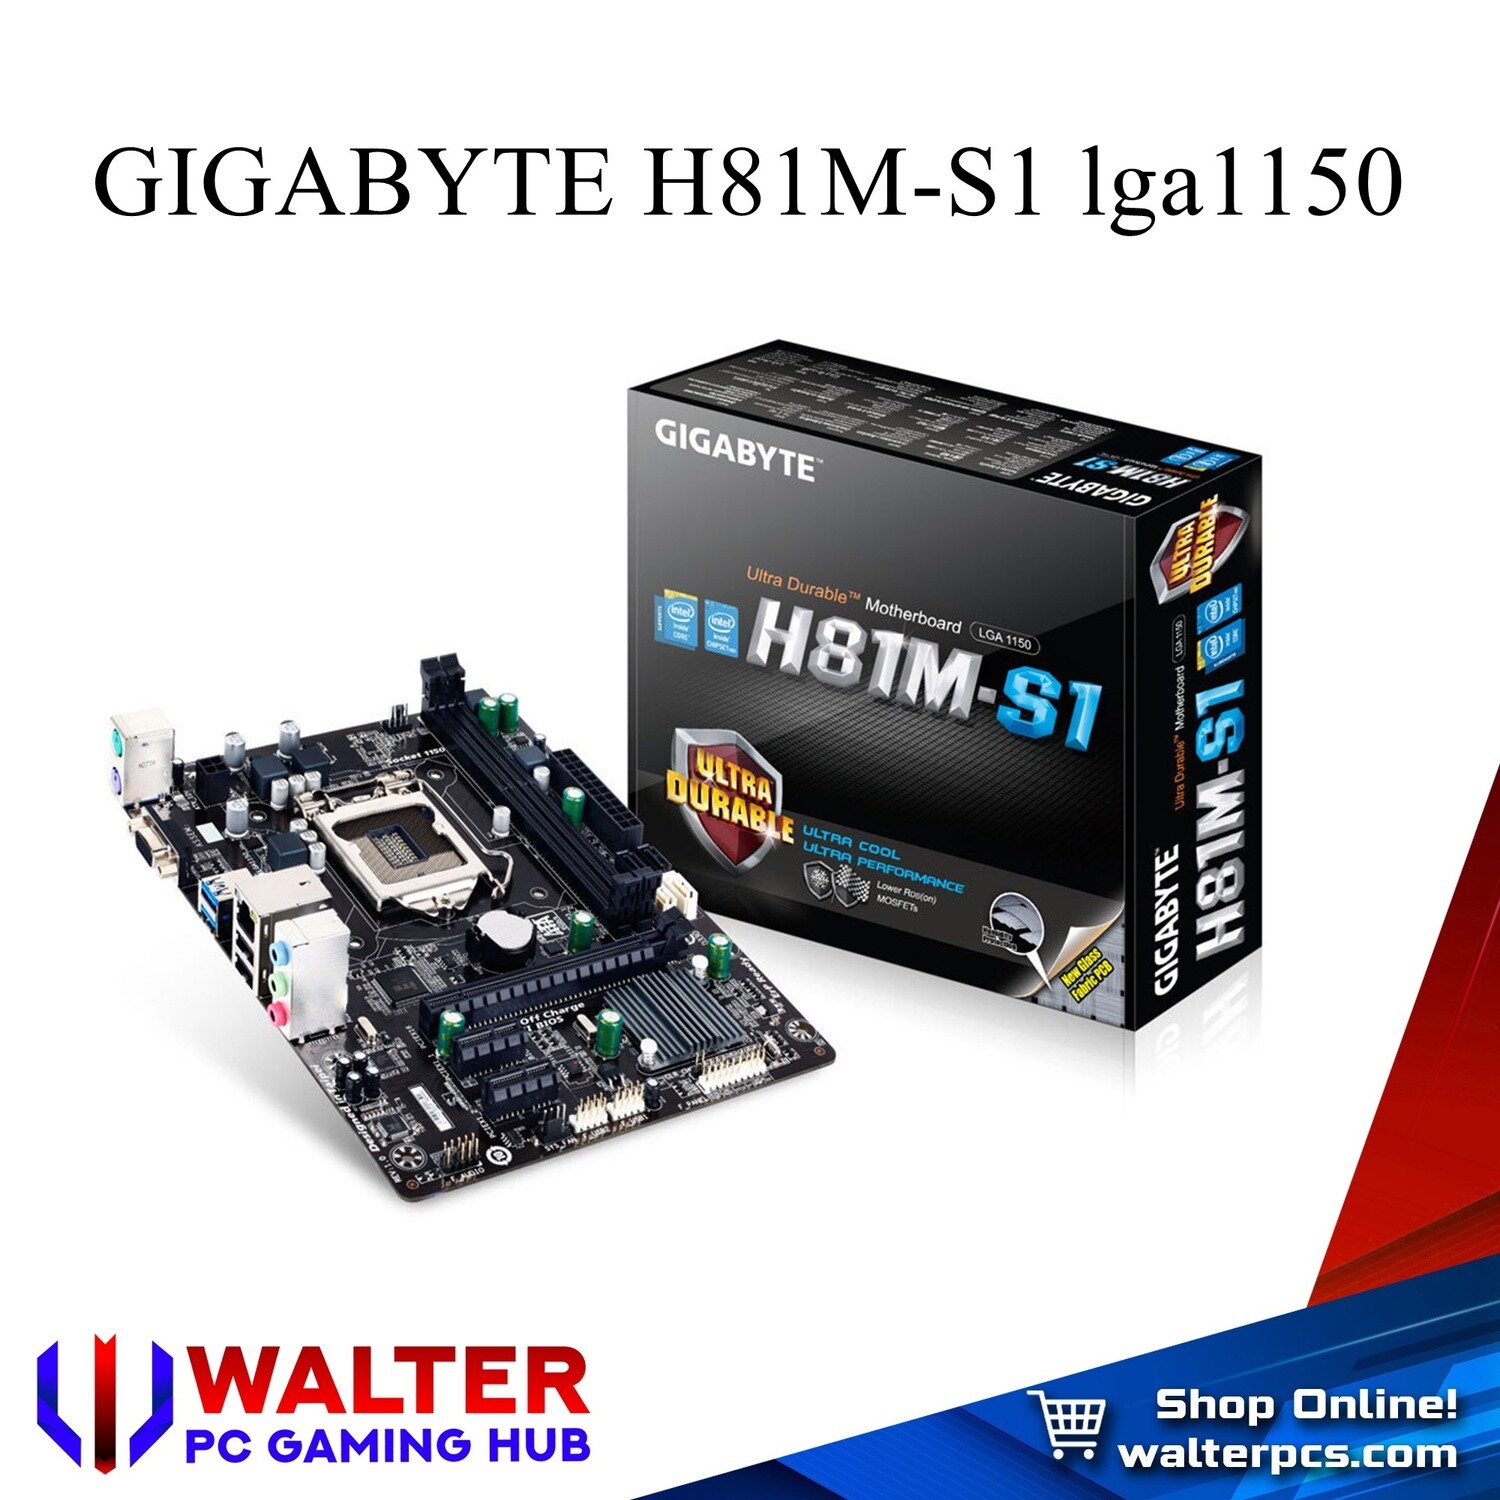 GIGABYTE H81M-S1 lga1150